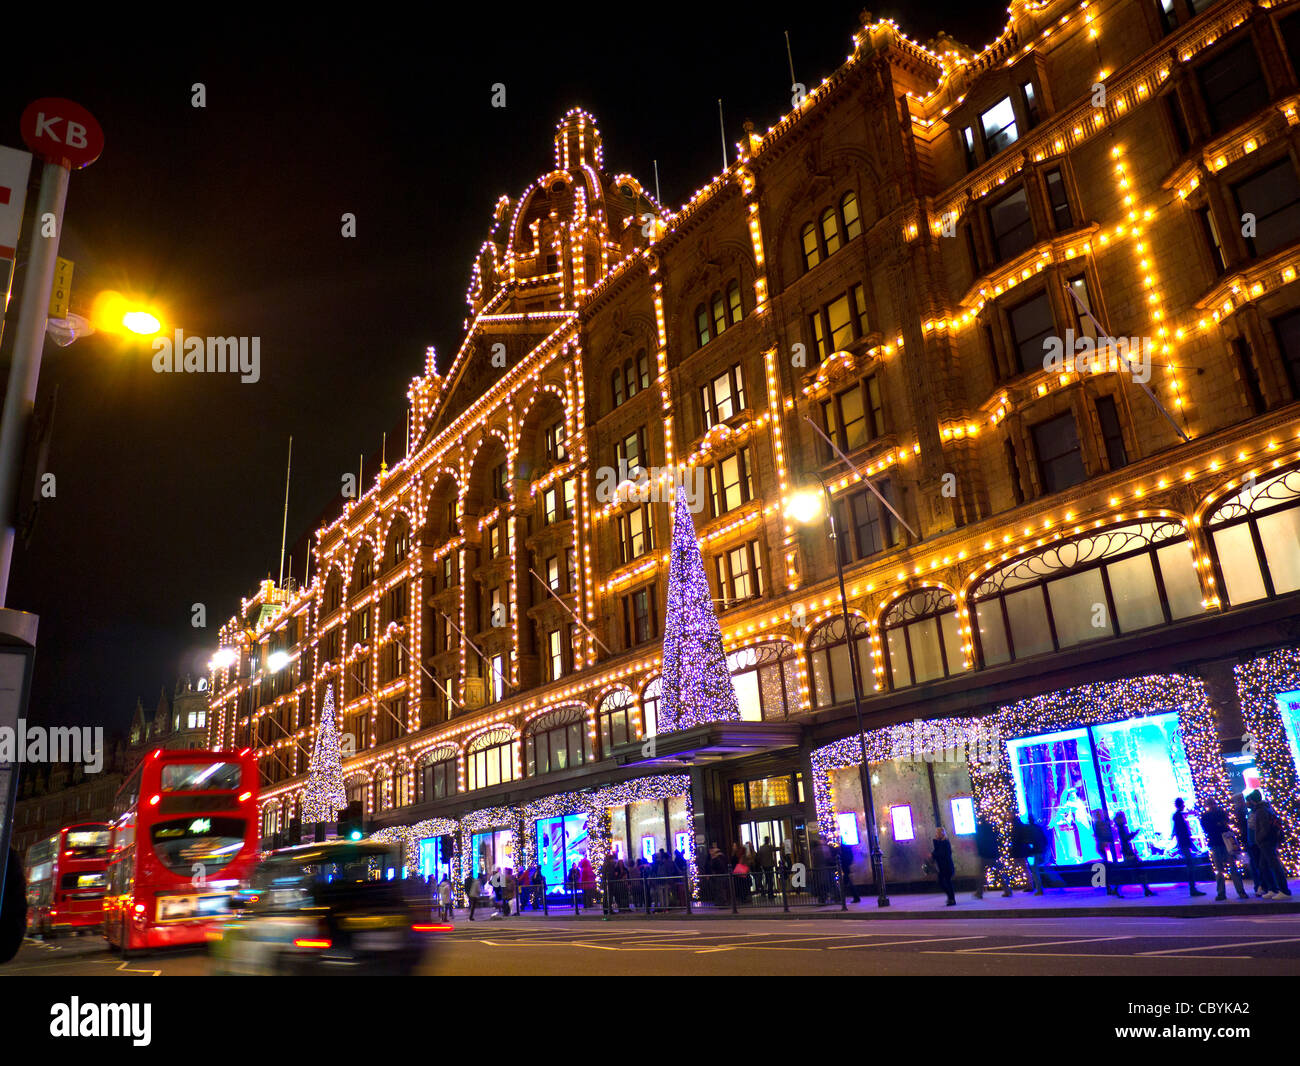 Natale shopping di Londra i grandi magazzini Harrods al tramonto con le luci di Natale shoppers e passaggio di taxi e autobus rossi Knightsbridge London SW1 Foto Stock